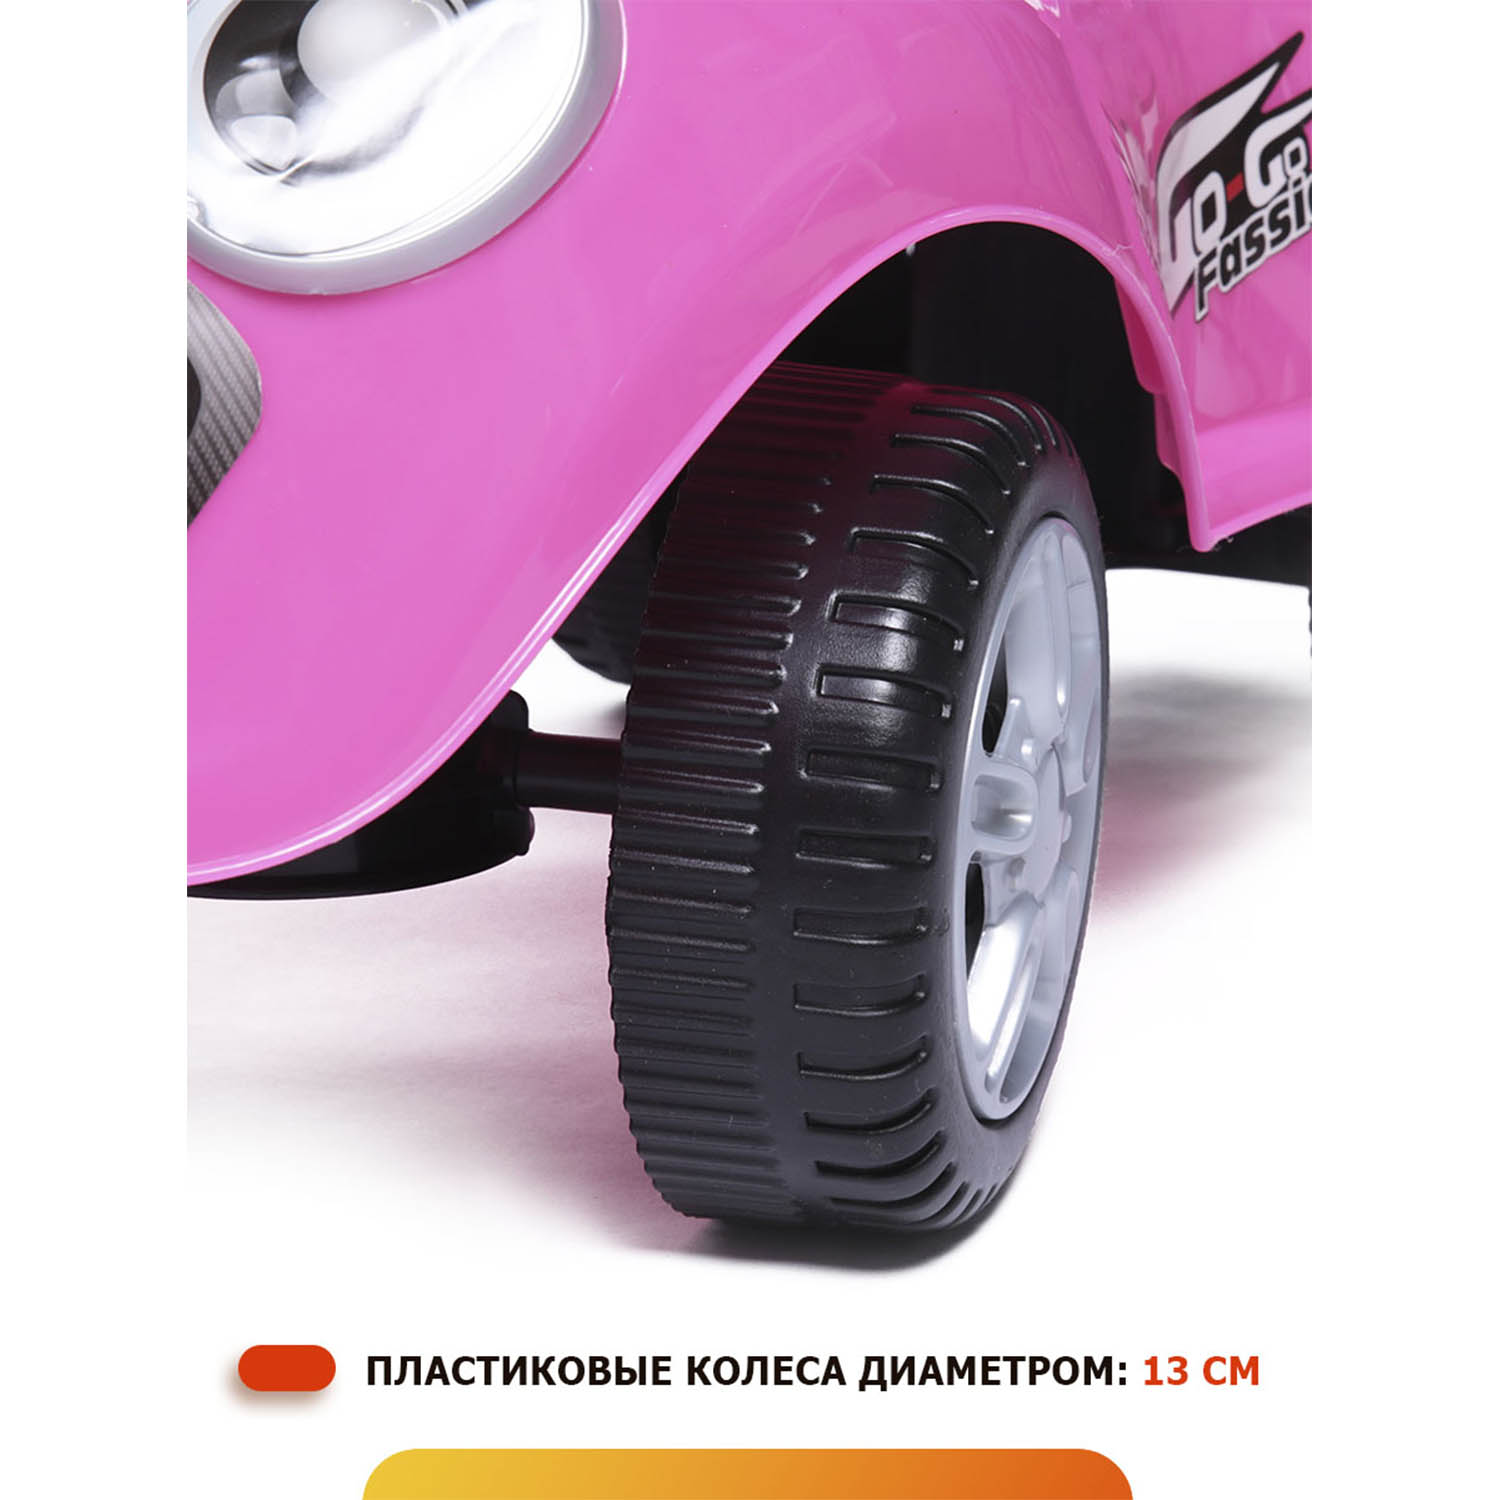 Каталка BabyCare Speedrunner музыкальный руль розовый - фото 6